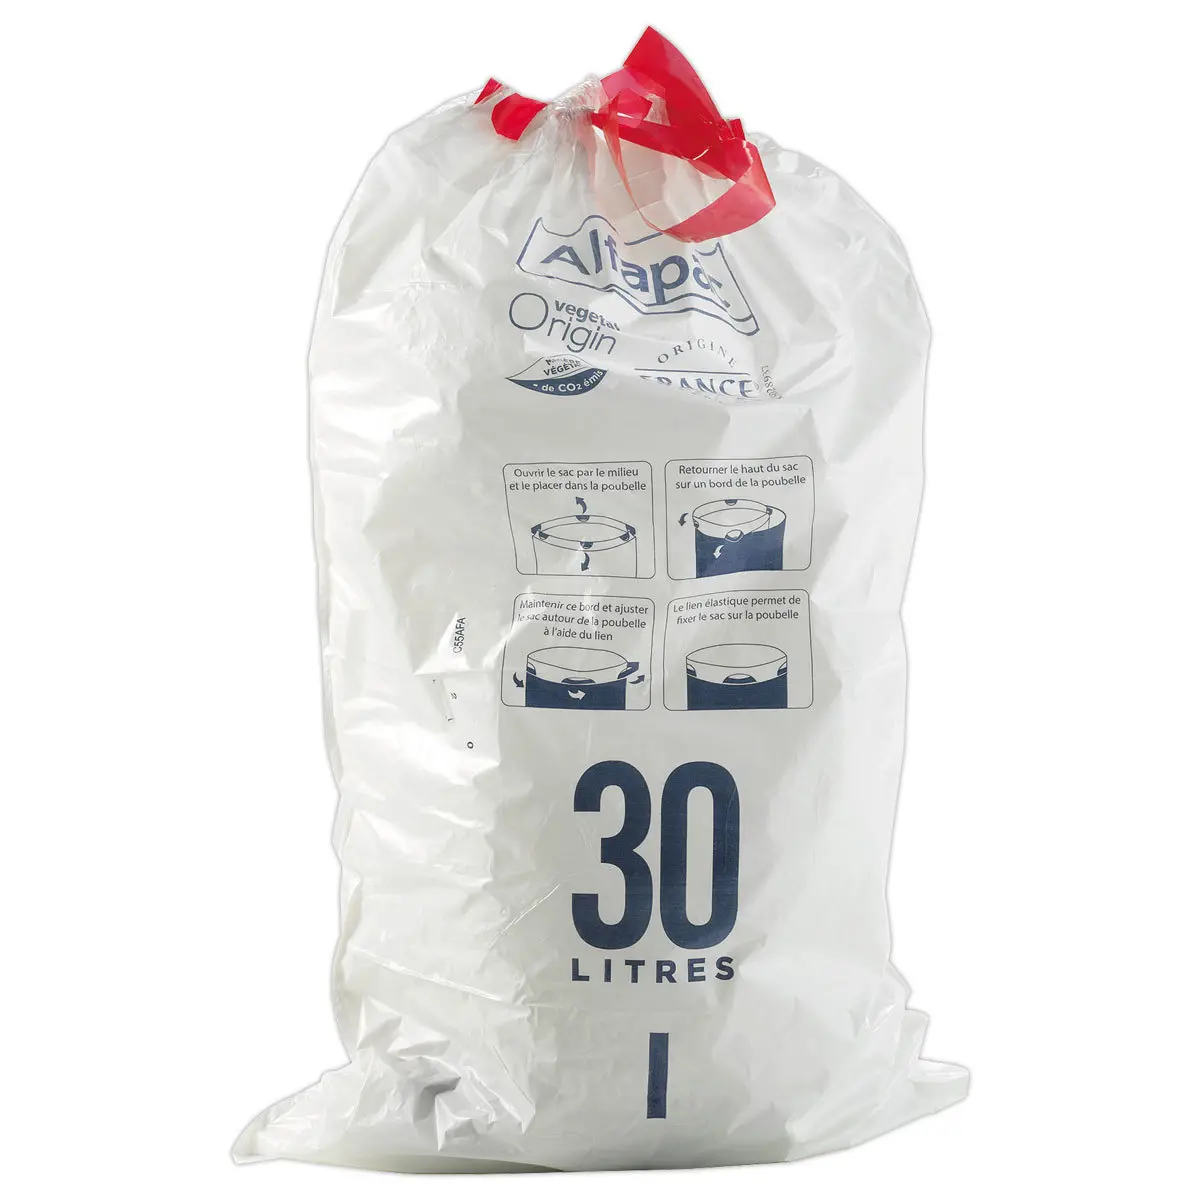 15 sacs poubelle haute à liens coulissants 30L (Alfapac)